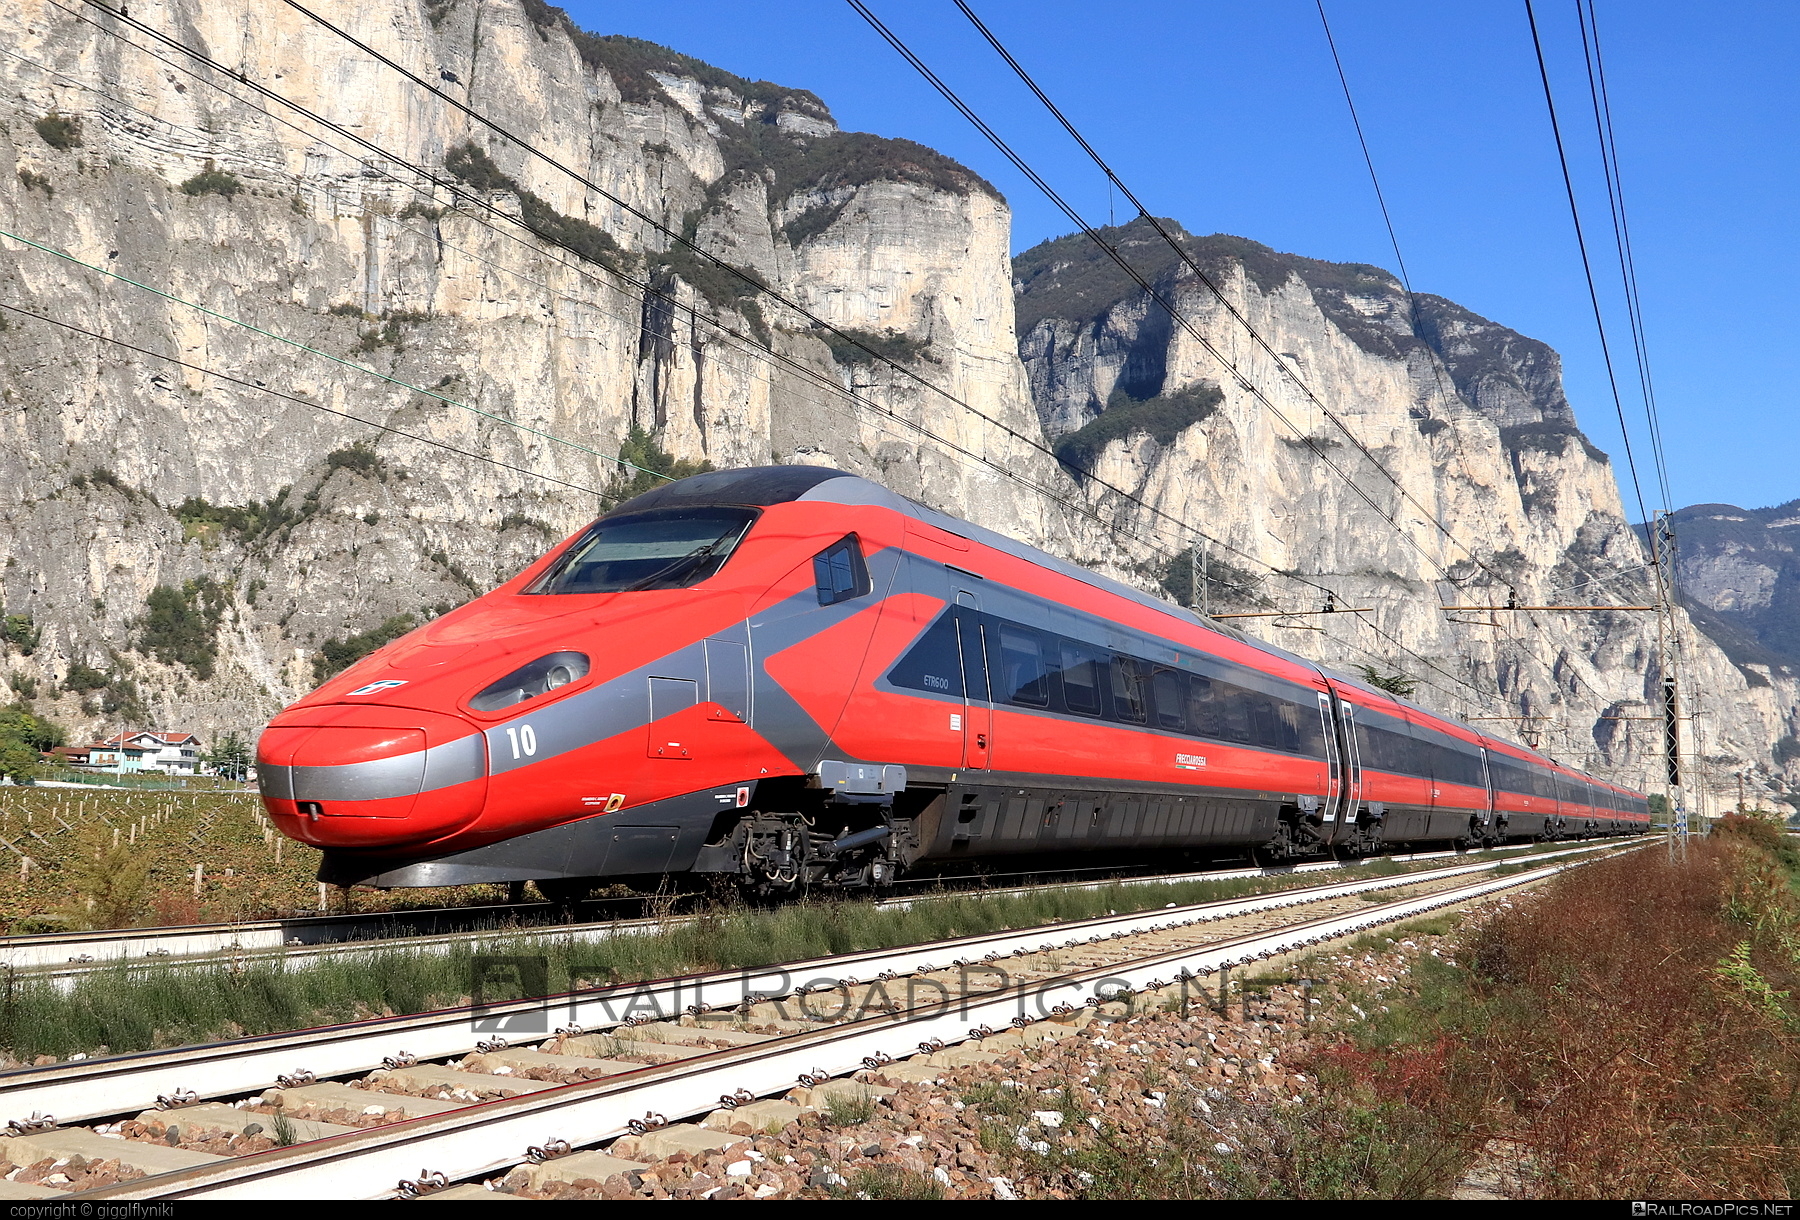 Alstom Class ETR.600 - ETR 600.10 operated by Trenitalia S.p.A. #alstom #alstometr600 #etr600 #ferroviedellostato #frecciarossa #fs #fsitaliane #lefrecce #newpendolino #pendolino #trenitalia #trenitaliaspa